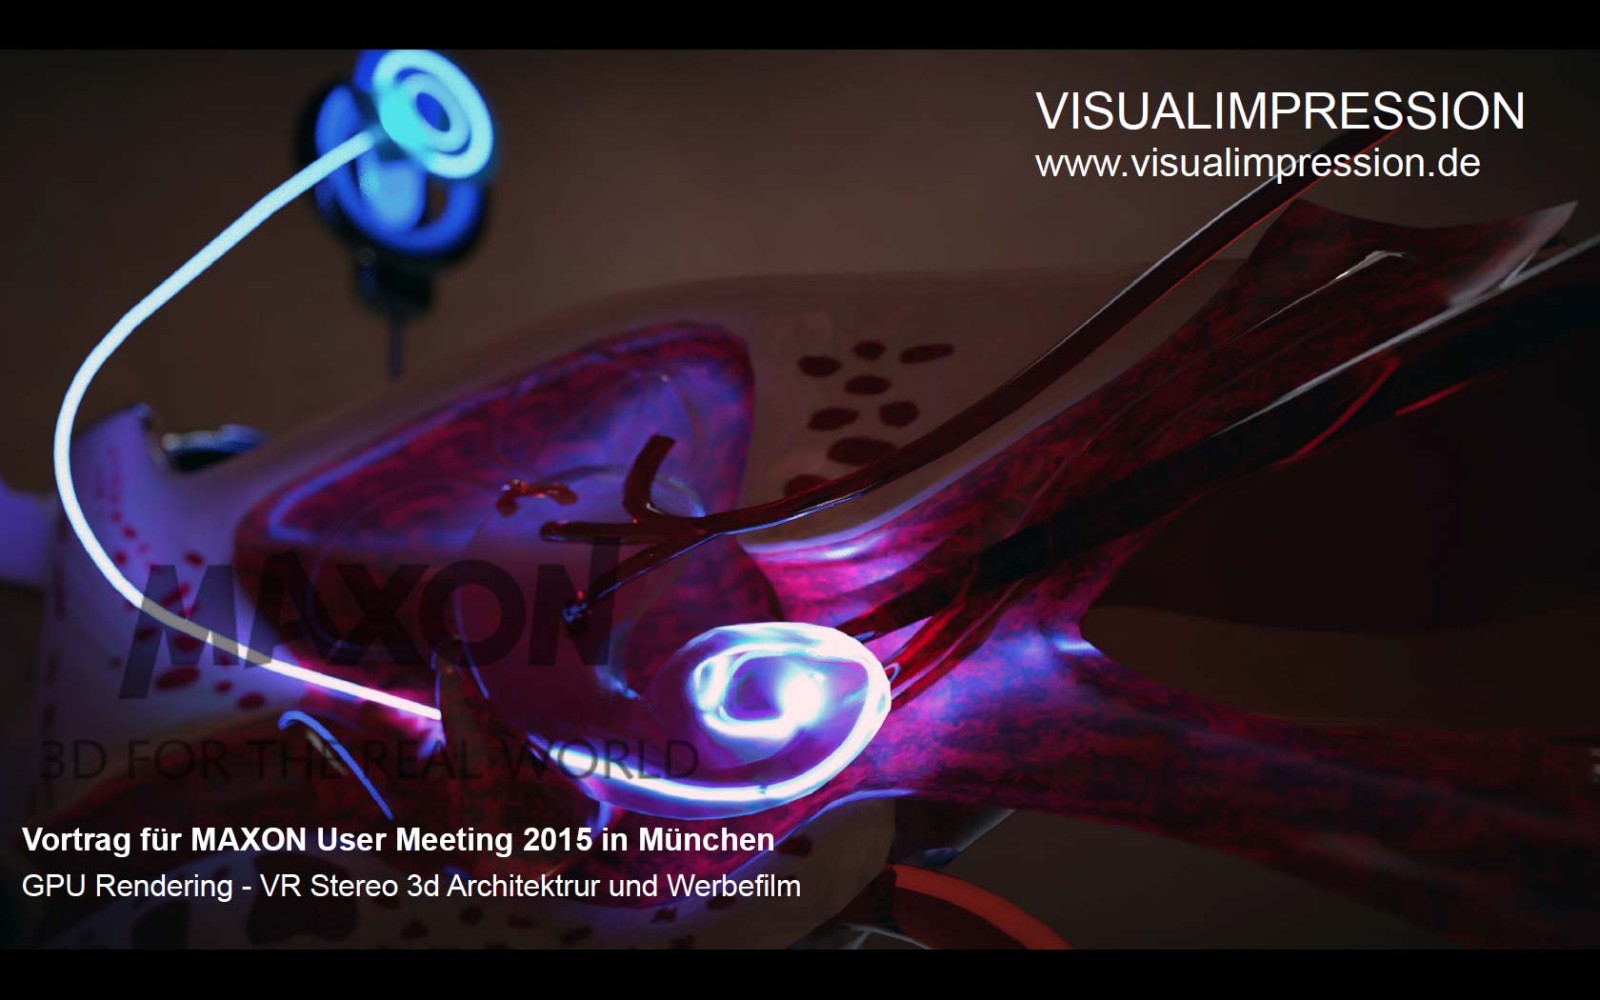 MAXON-User-Meeting-2015-München-GPU-Rendering-VR-Stereo-3D-Architektur-und-Werbefilm